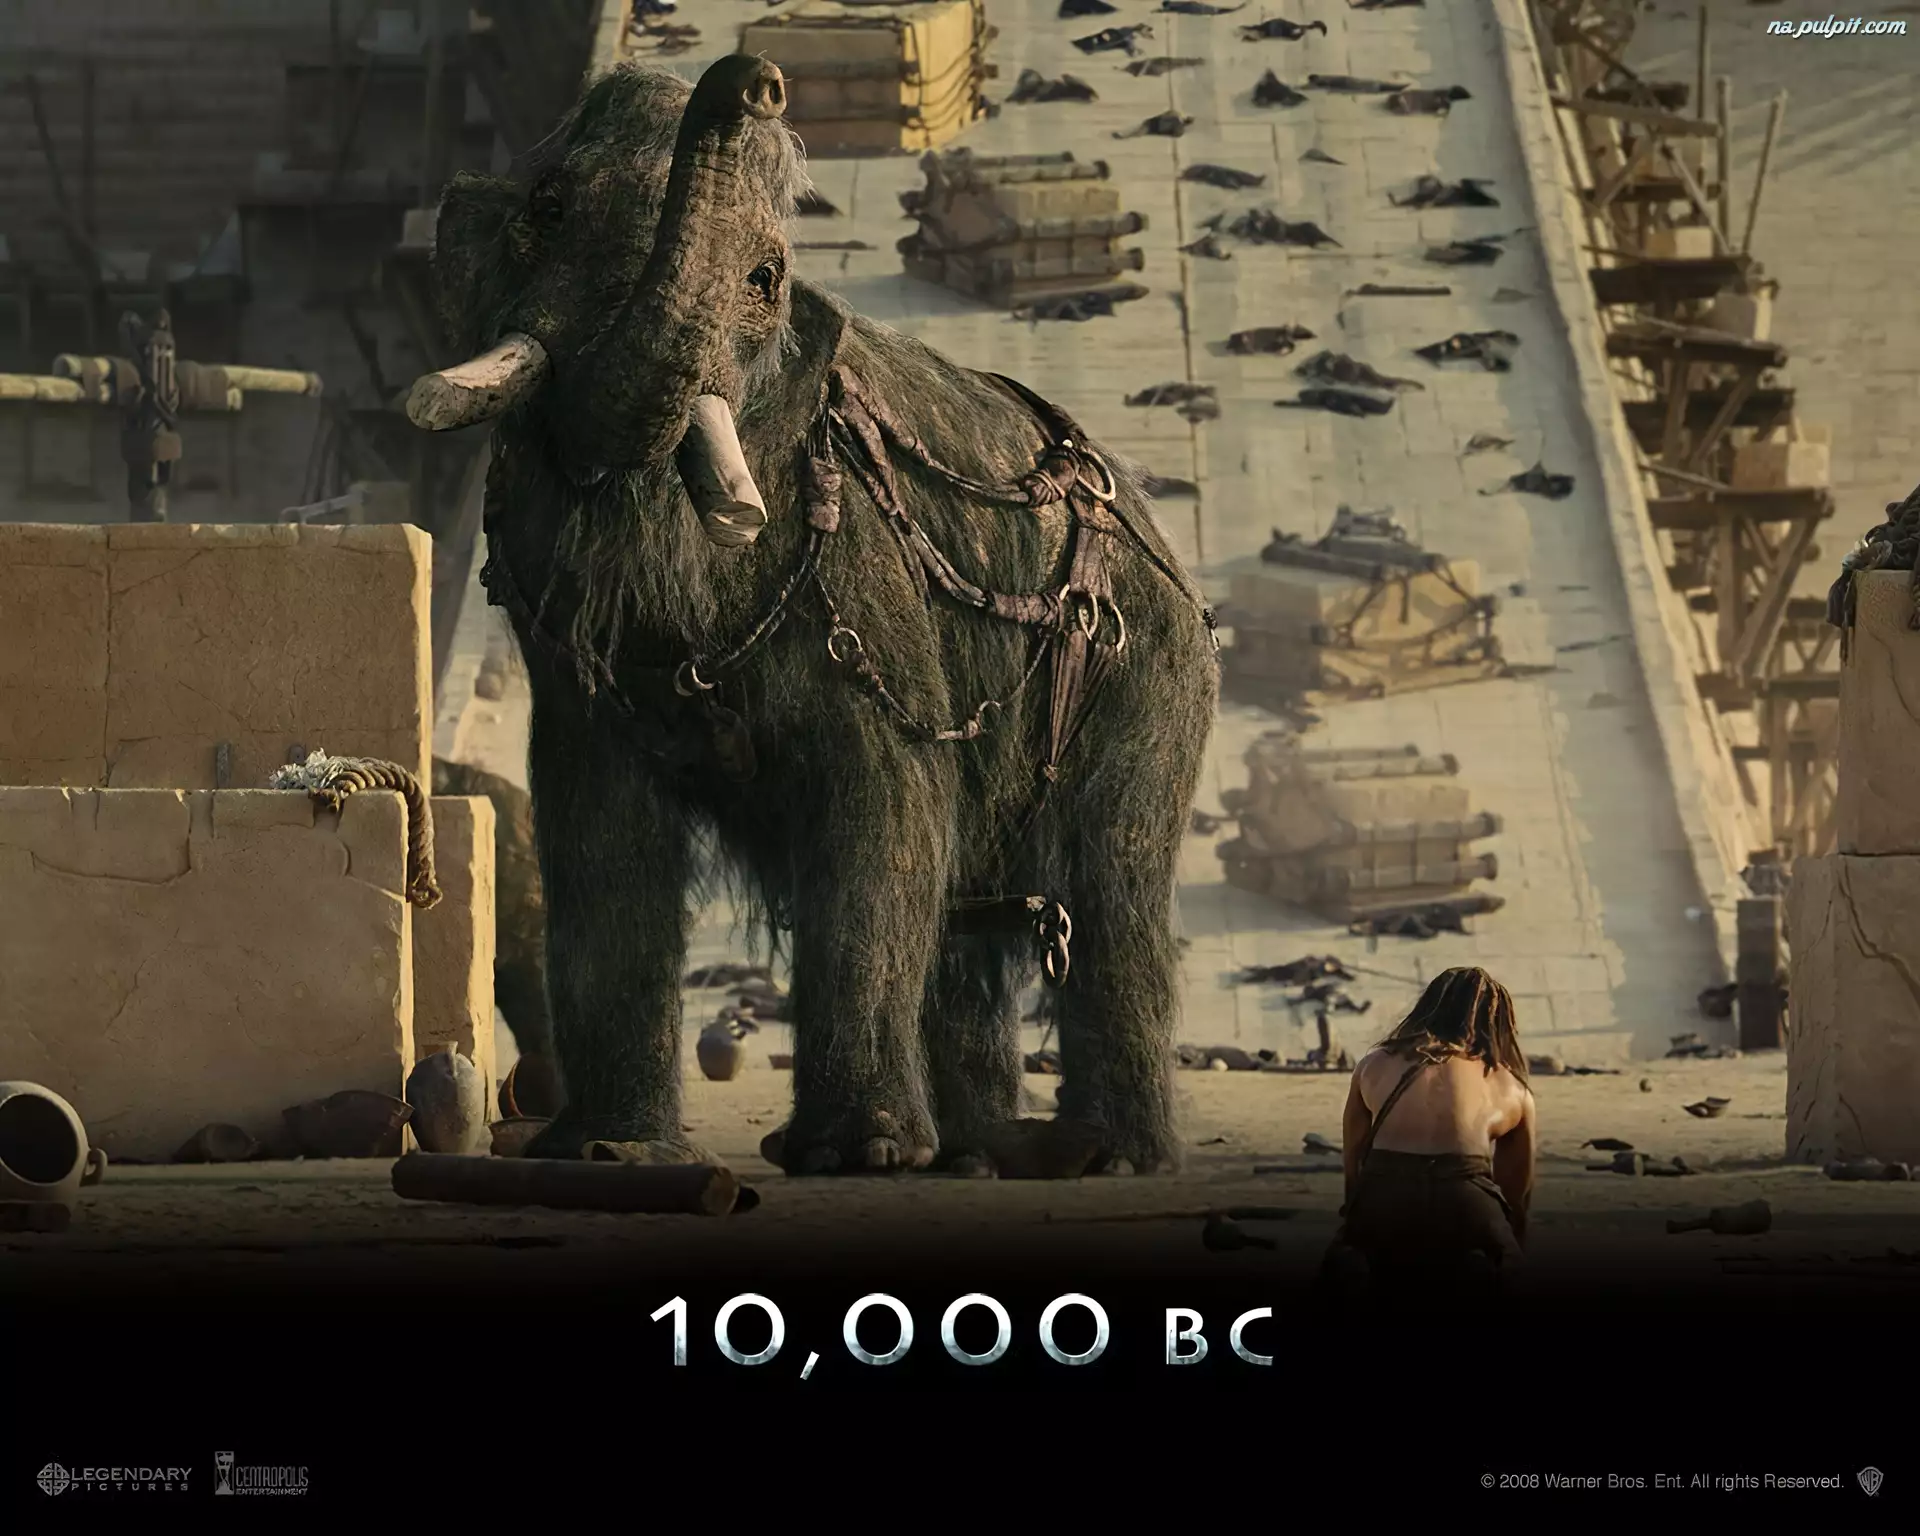 10000 Bc, ofiary, stary, mamut